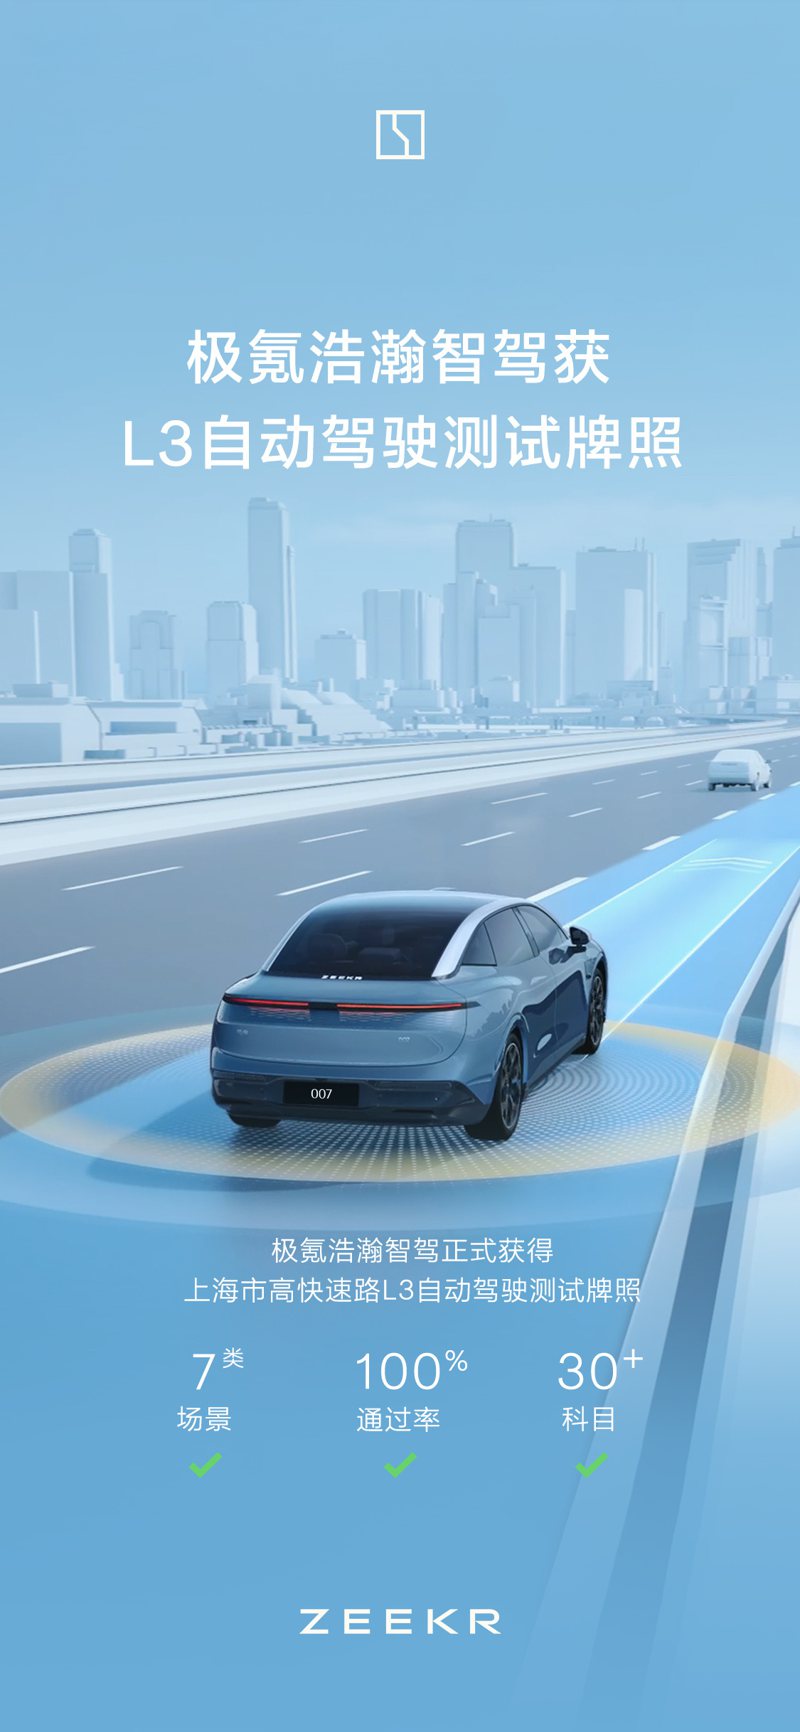 極氪（Zeekr）宣布，其自研的浩瀚智駕系統獲得上海市高快速路L3（Level 3）自動駕駛測試牌照，並且已在七類場景、30餘項科目測試中獲得100%通過率。 圖／極氪汽車微博